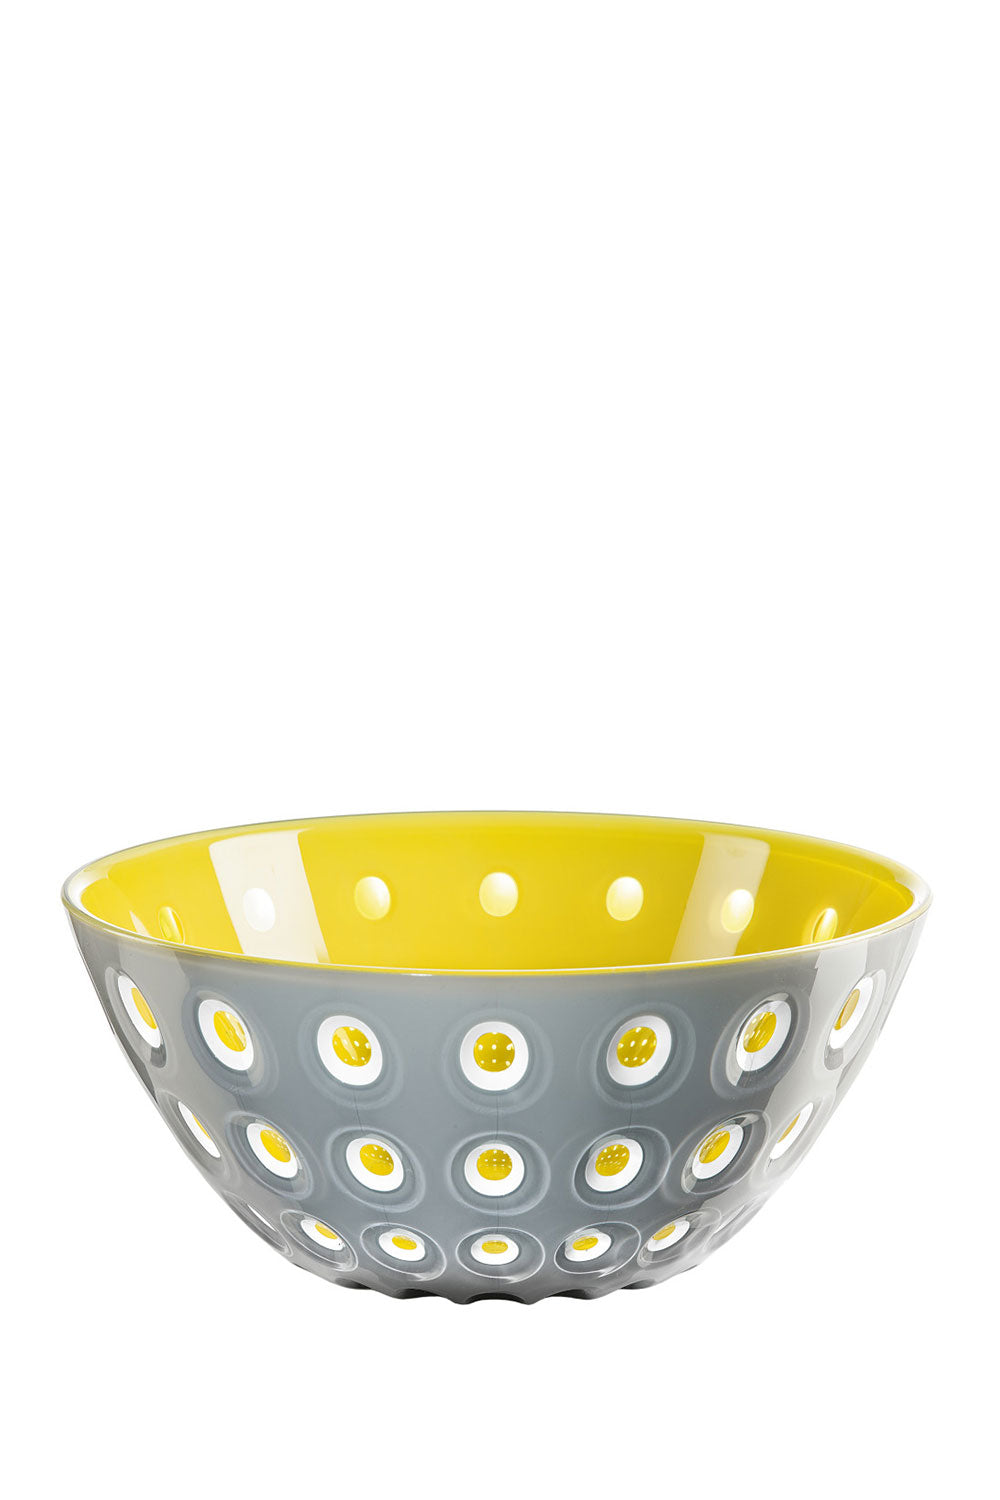 Murrine Grey & Yellow Bowl, 25 cm - Maison7